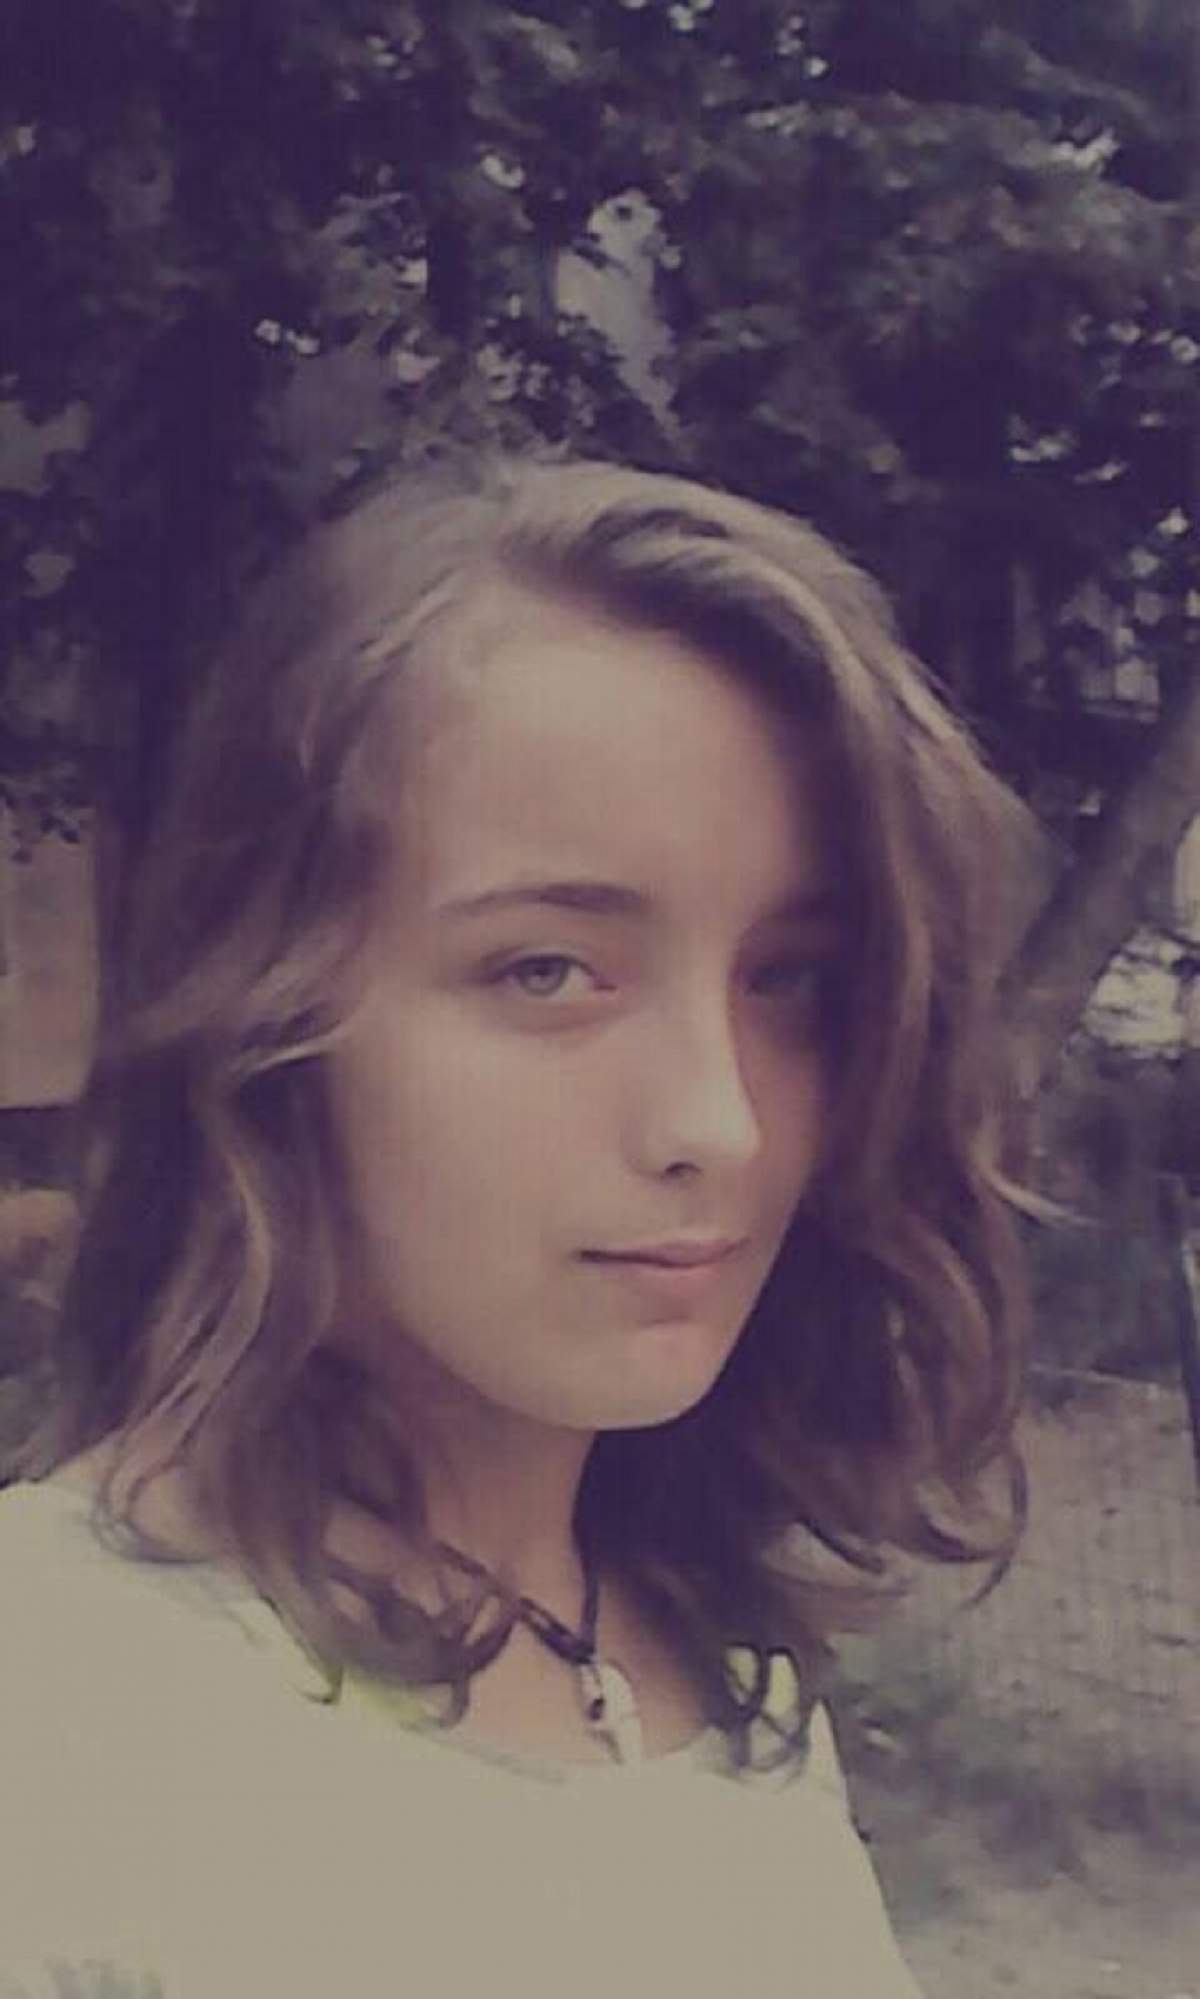 Alertă în Arad! O adolescentă de 15 ani a dispărut de acasă! Sună imediat la 112 dacă o vezi